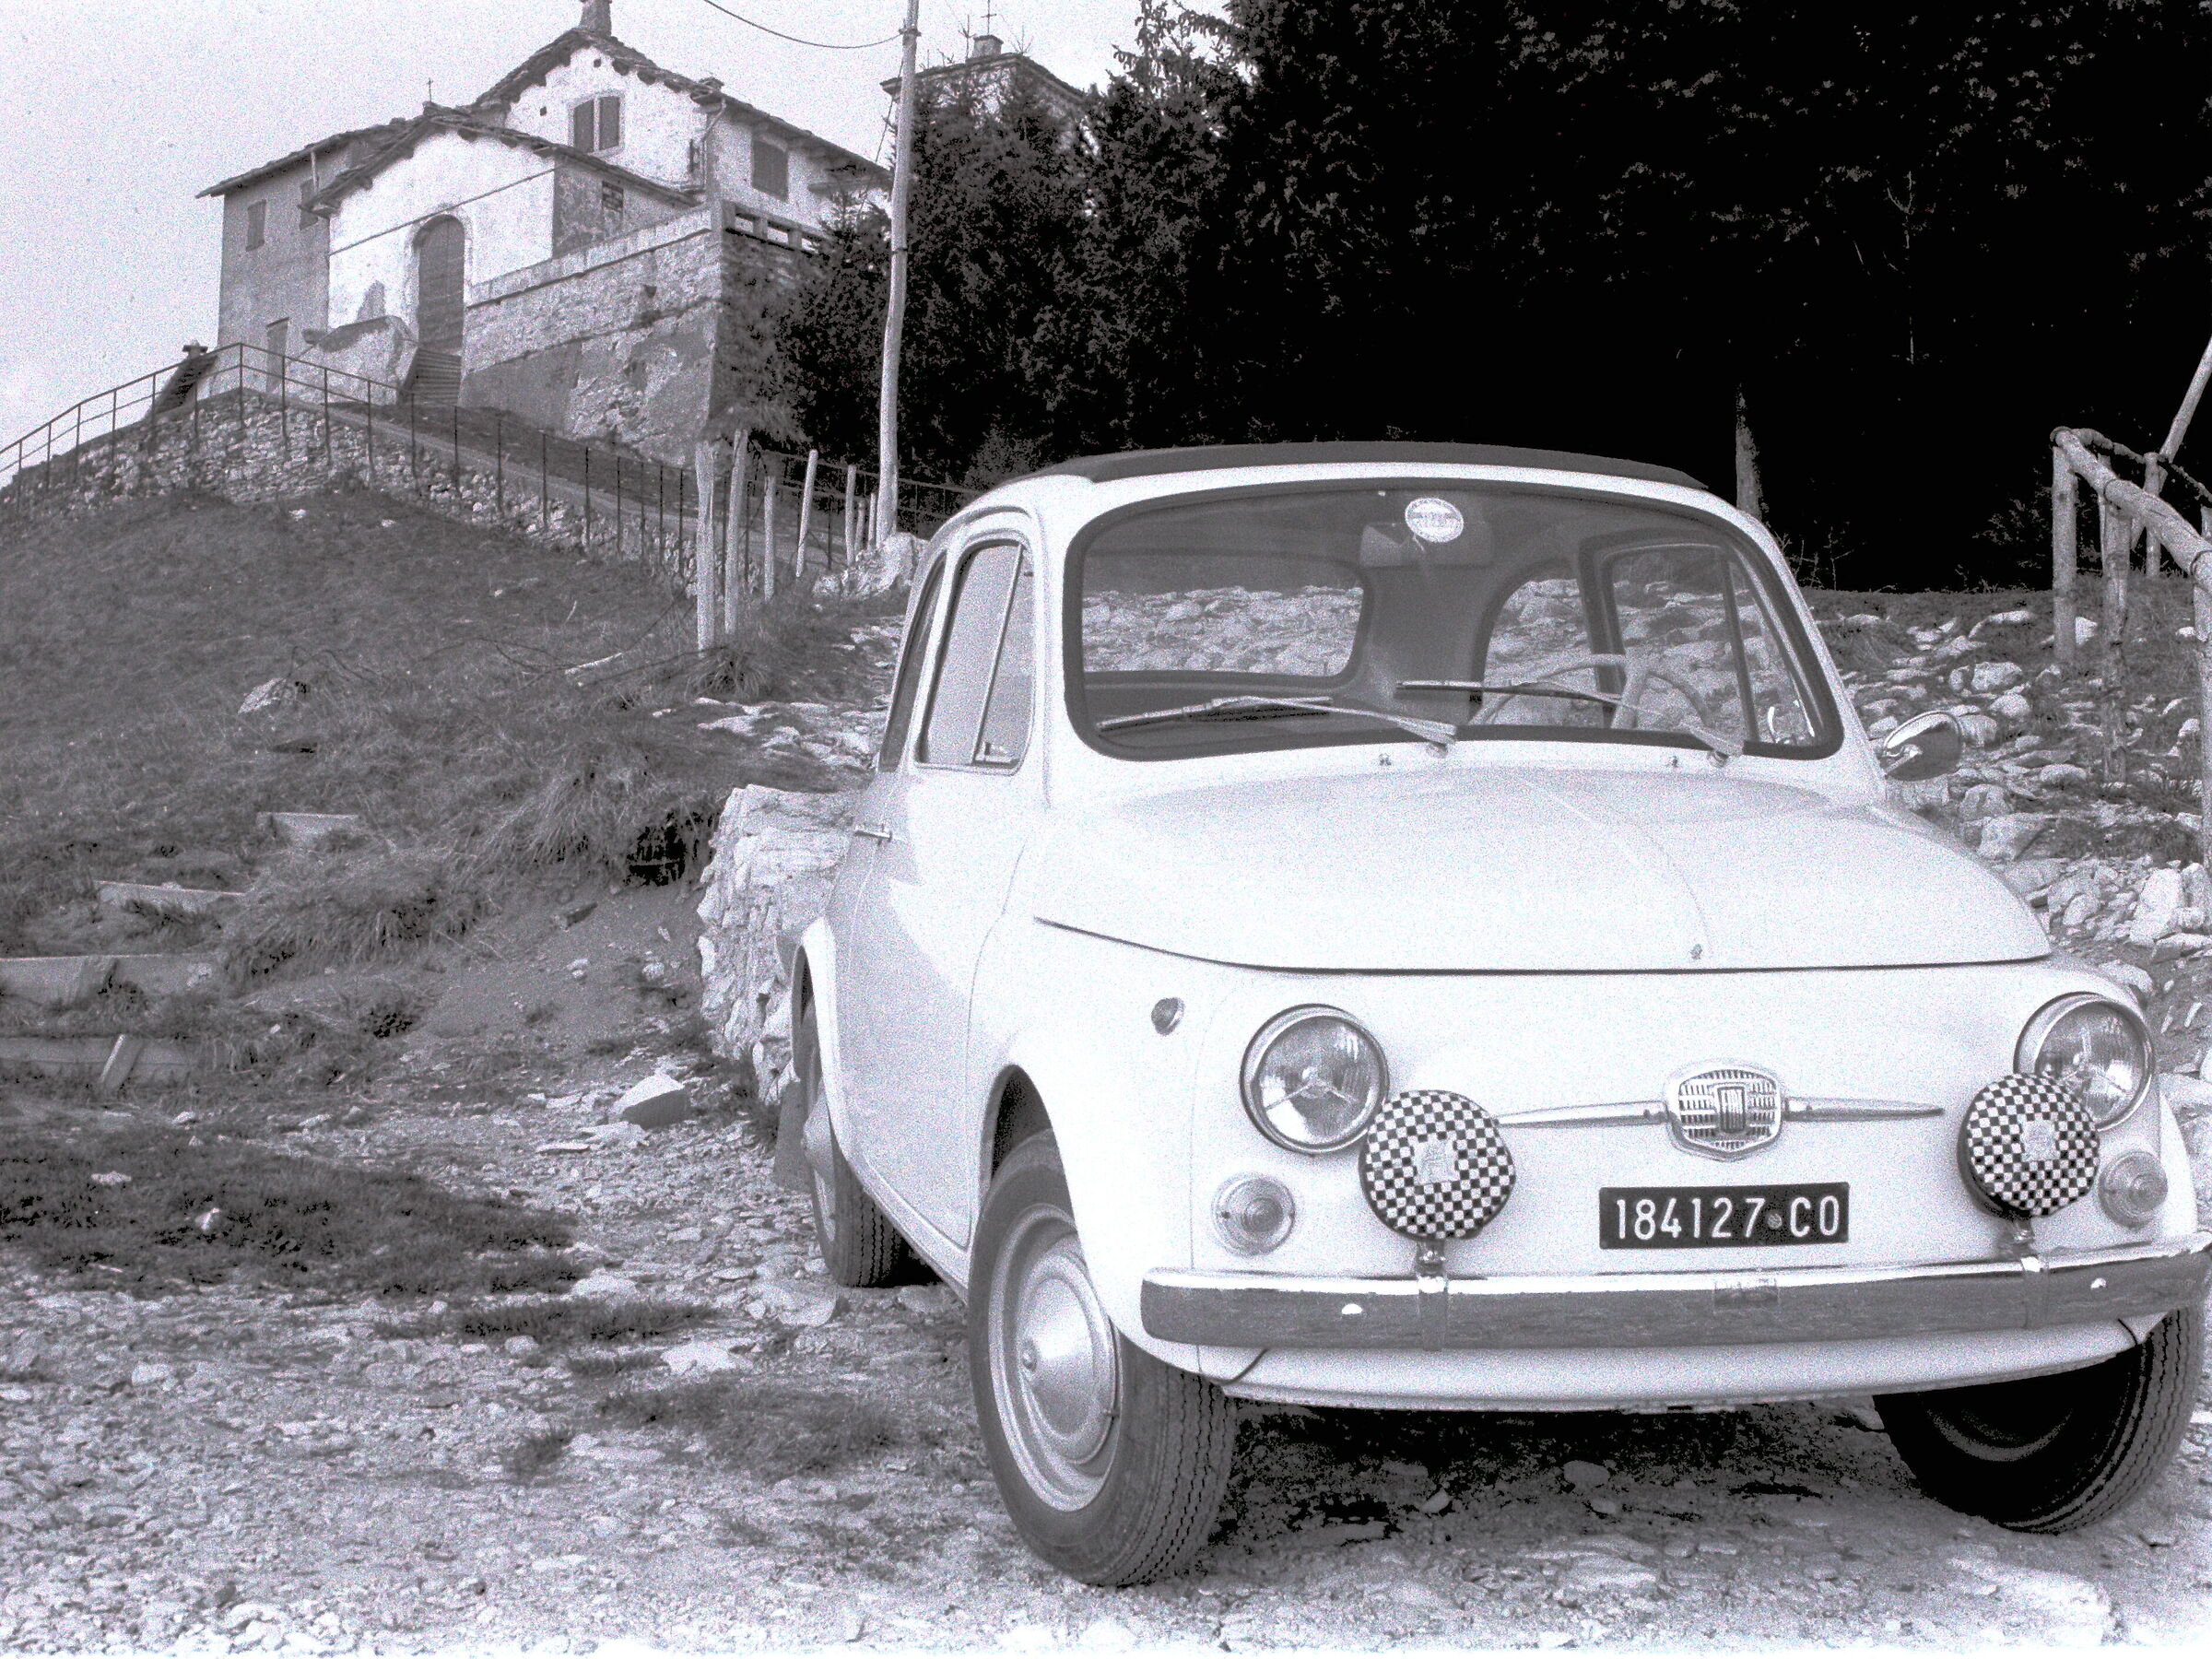 CANONET FOTOFRAFA fIAT 500 1966...